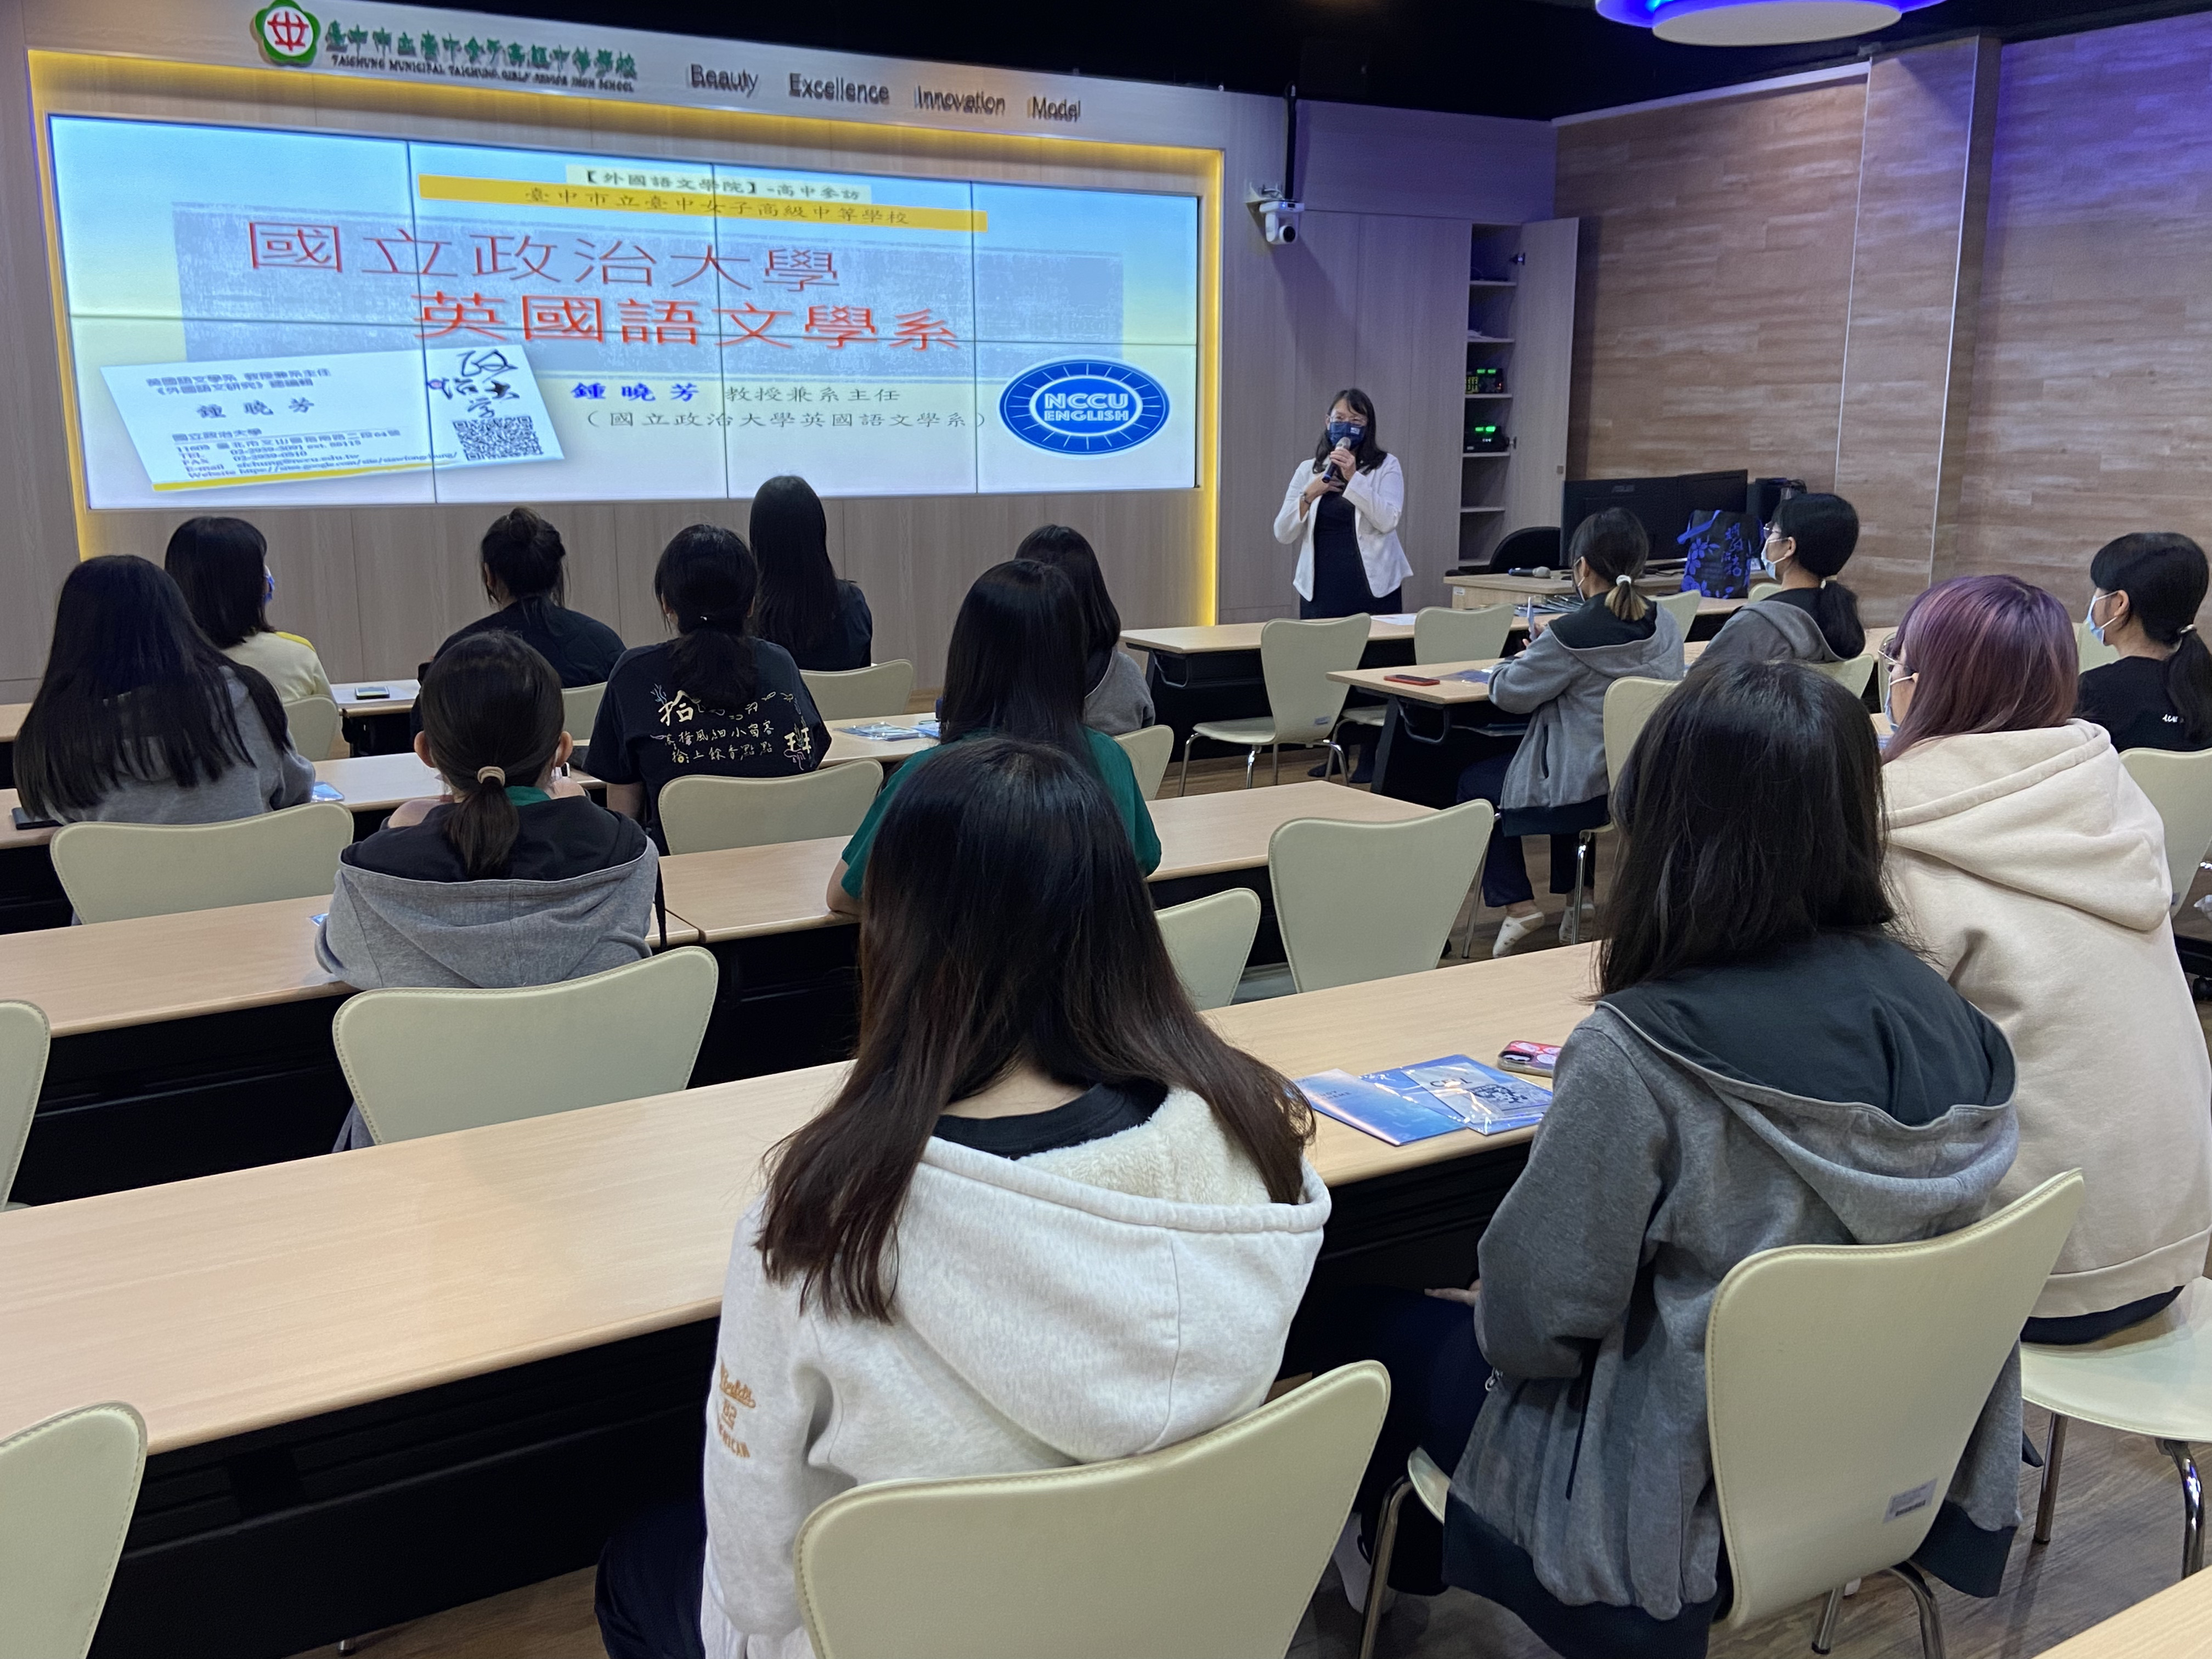 2022/11/8 Visiting Taichung Minicipal Taichung Girls‵ Senior High School